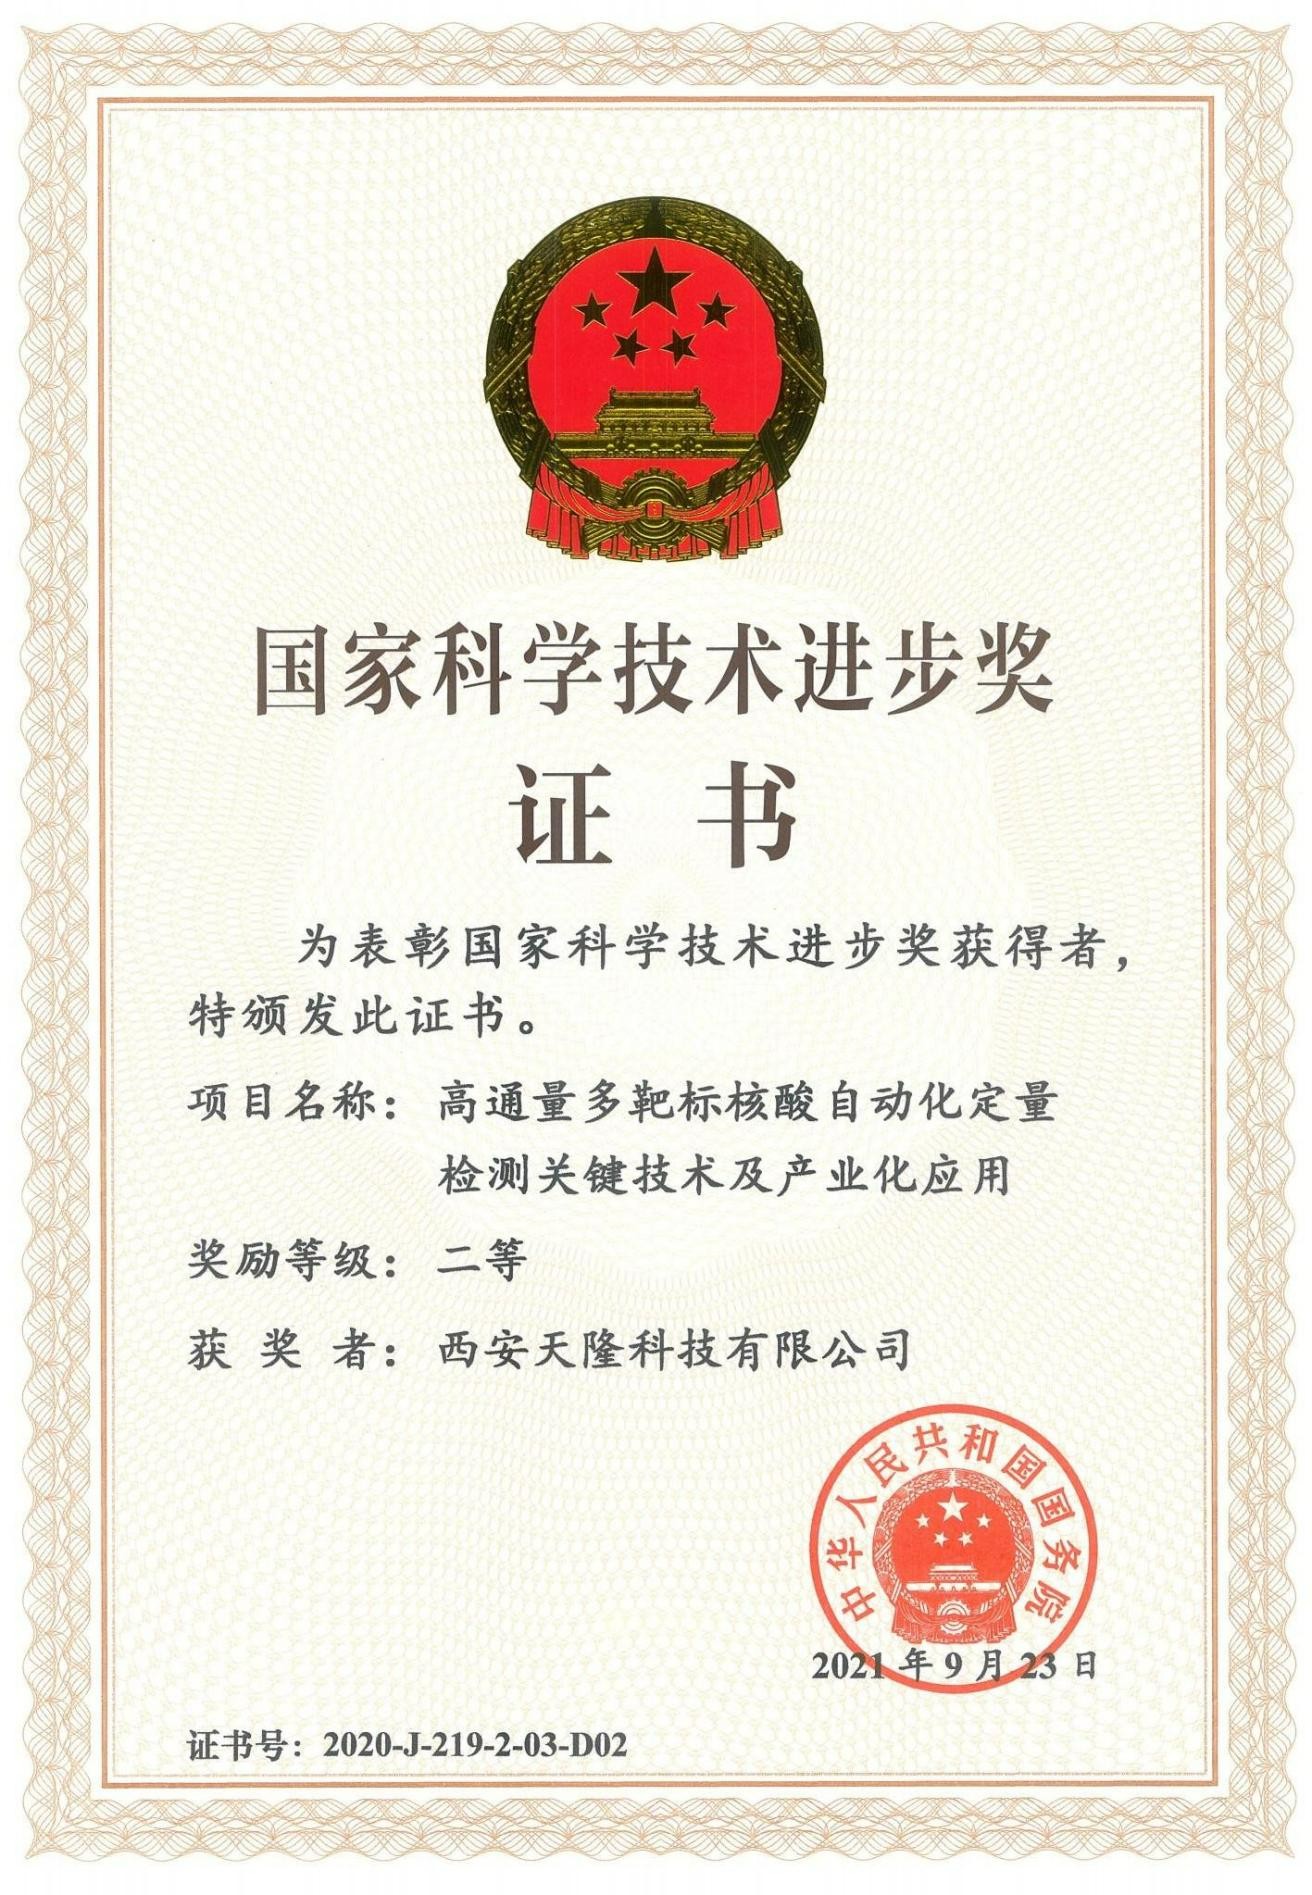 Prêmio Nacional de Progresso em Ciência e Tecnologia da China (Xi''an Tianlong)